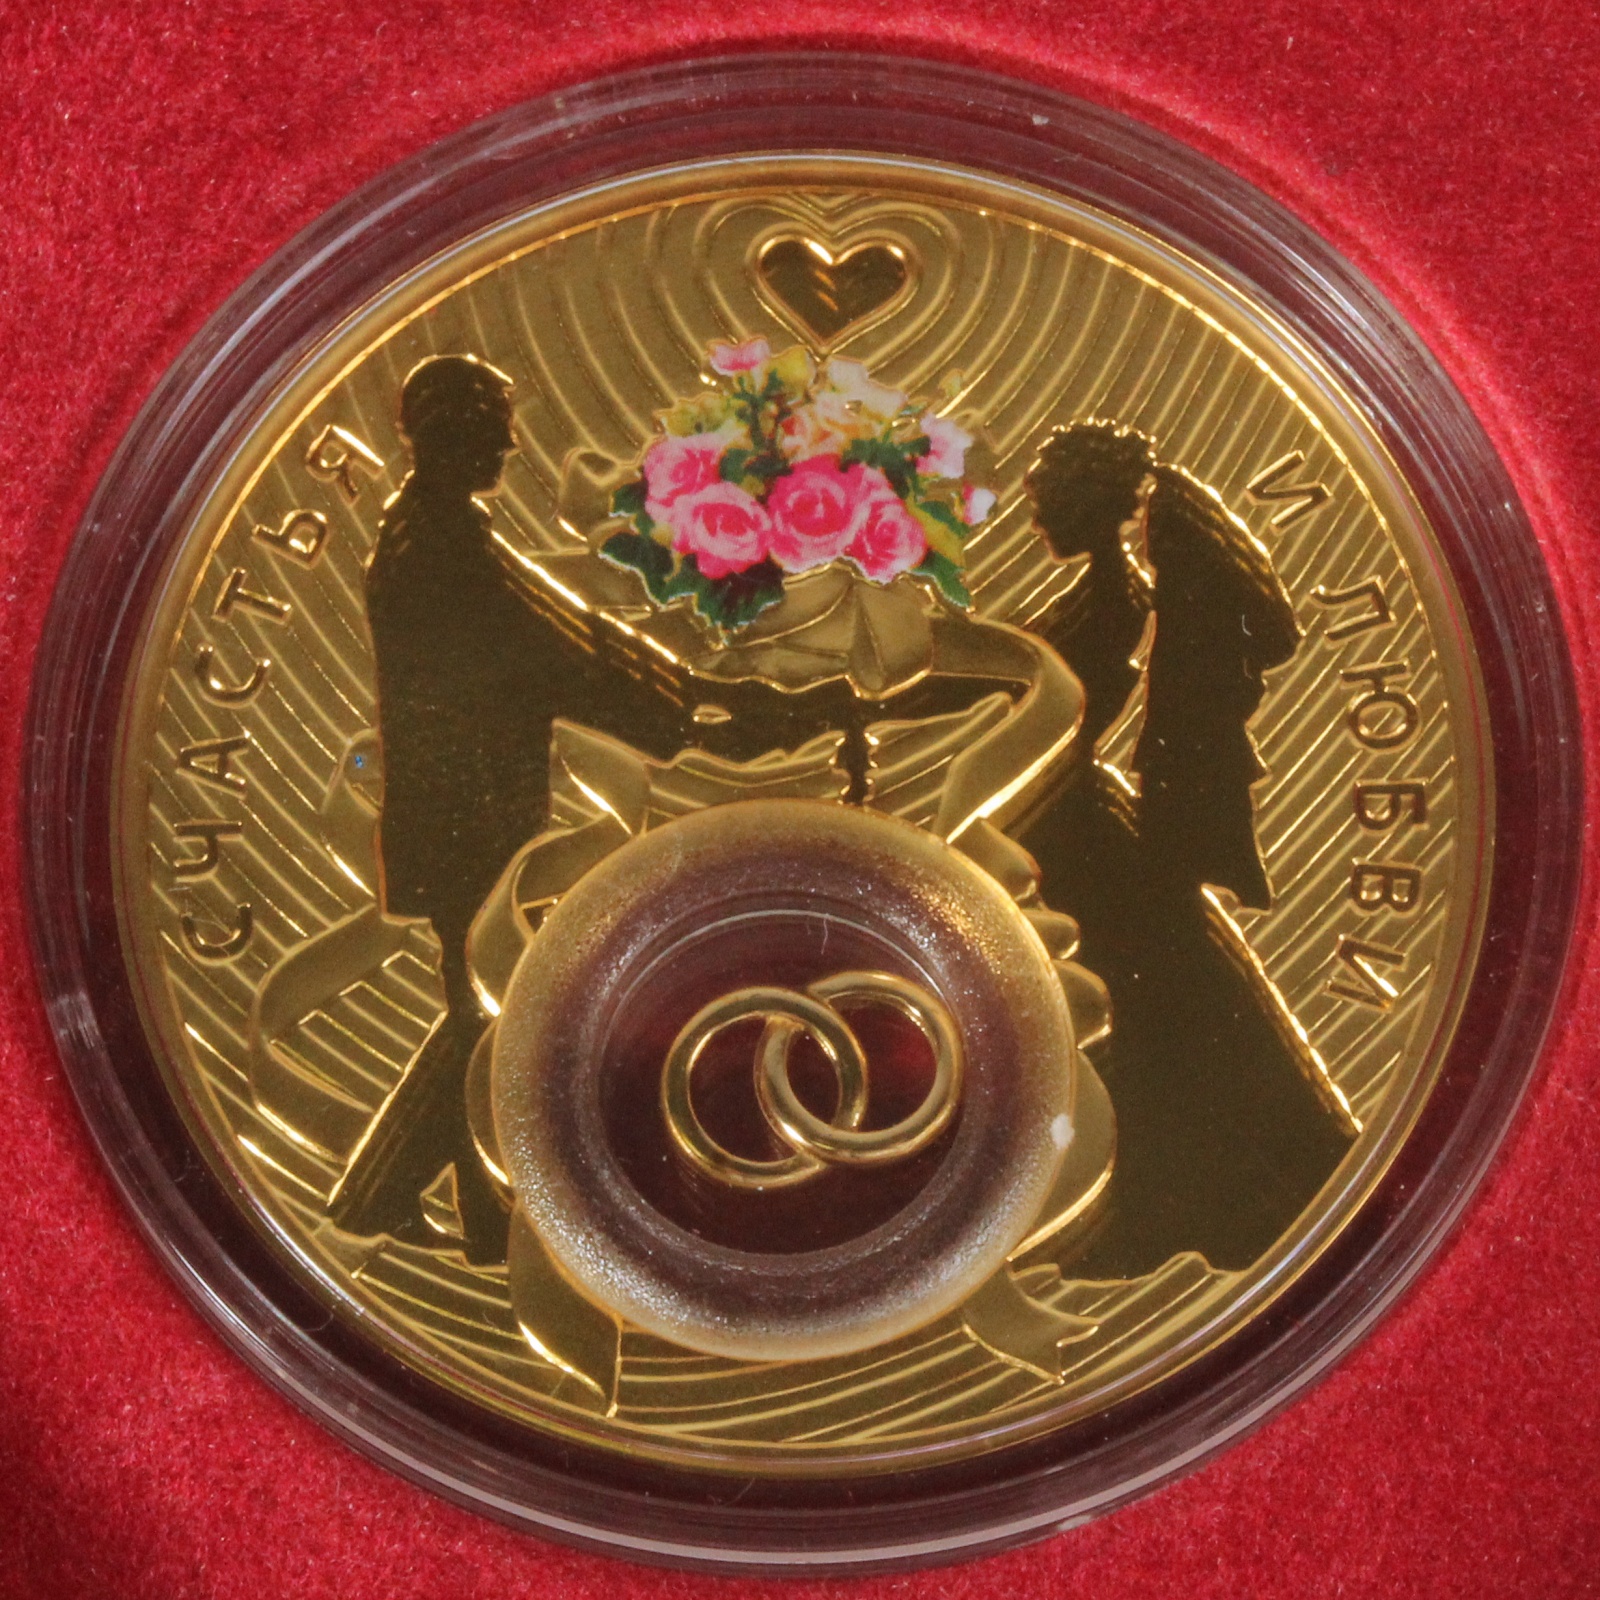 ニウエ 2ドル 2DOLLARS ウェディングコイン ゴールドカラーコイン 2013